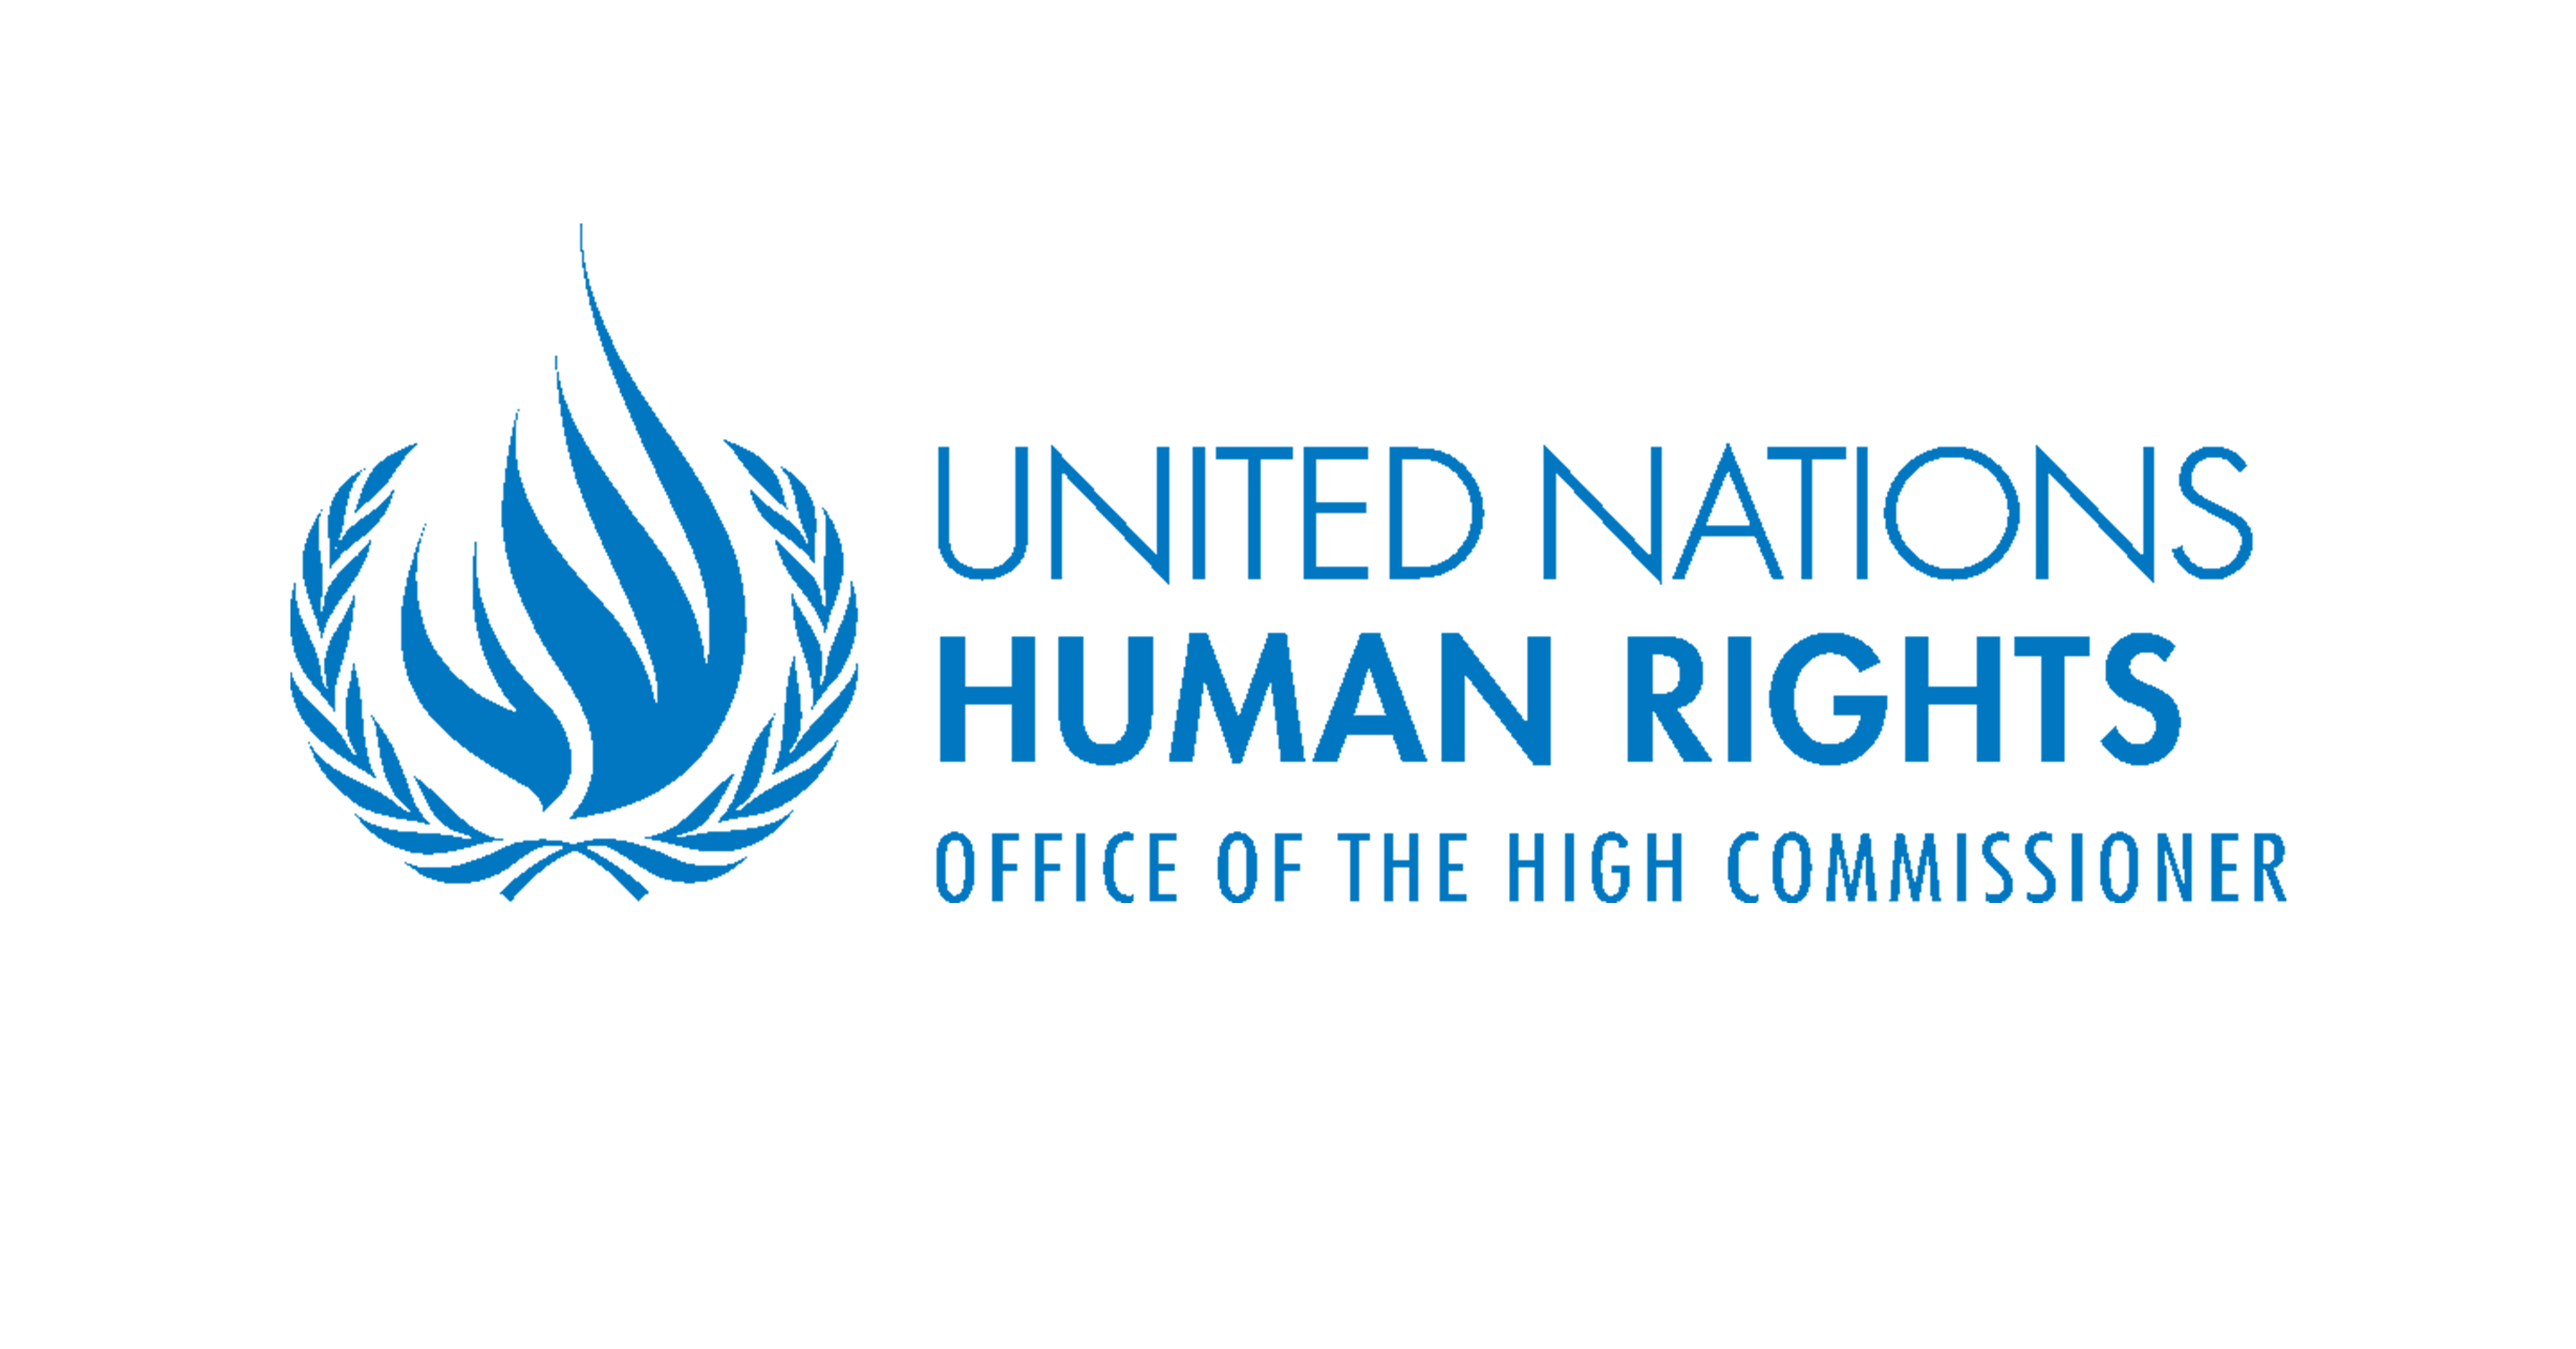 Комиссар оон по правам человека. Верховный комиссар ООН по правам человека эмблема. Совет ООН по правам человека лого. Управление Верховного комиссара ООН.